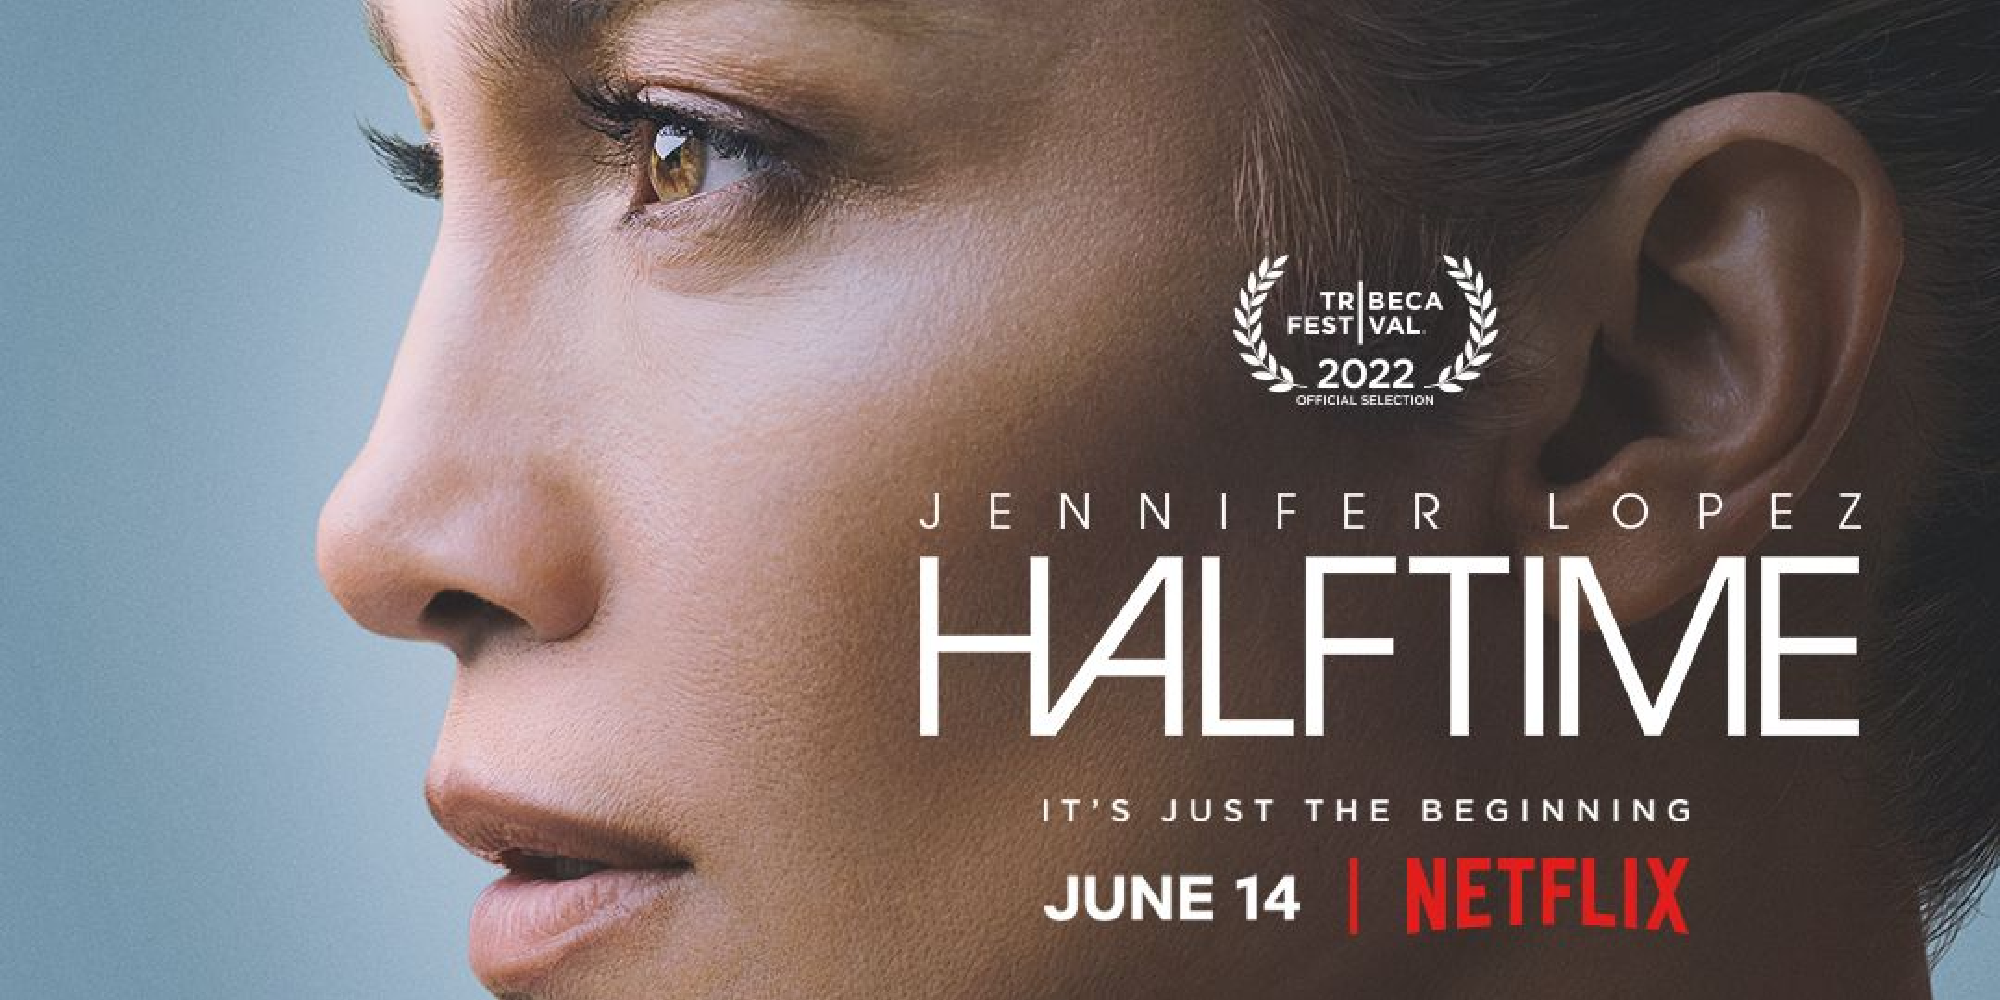 Jennifer Lopez Netflix Documentary Gets June Release Date